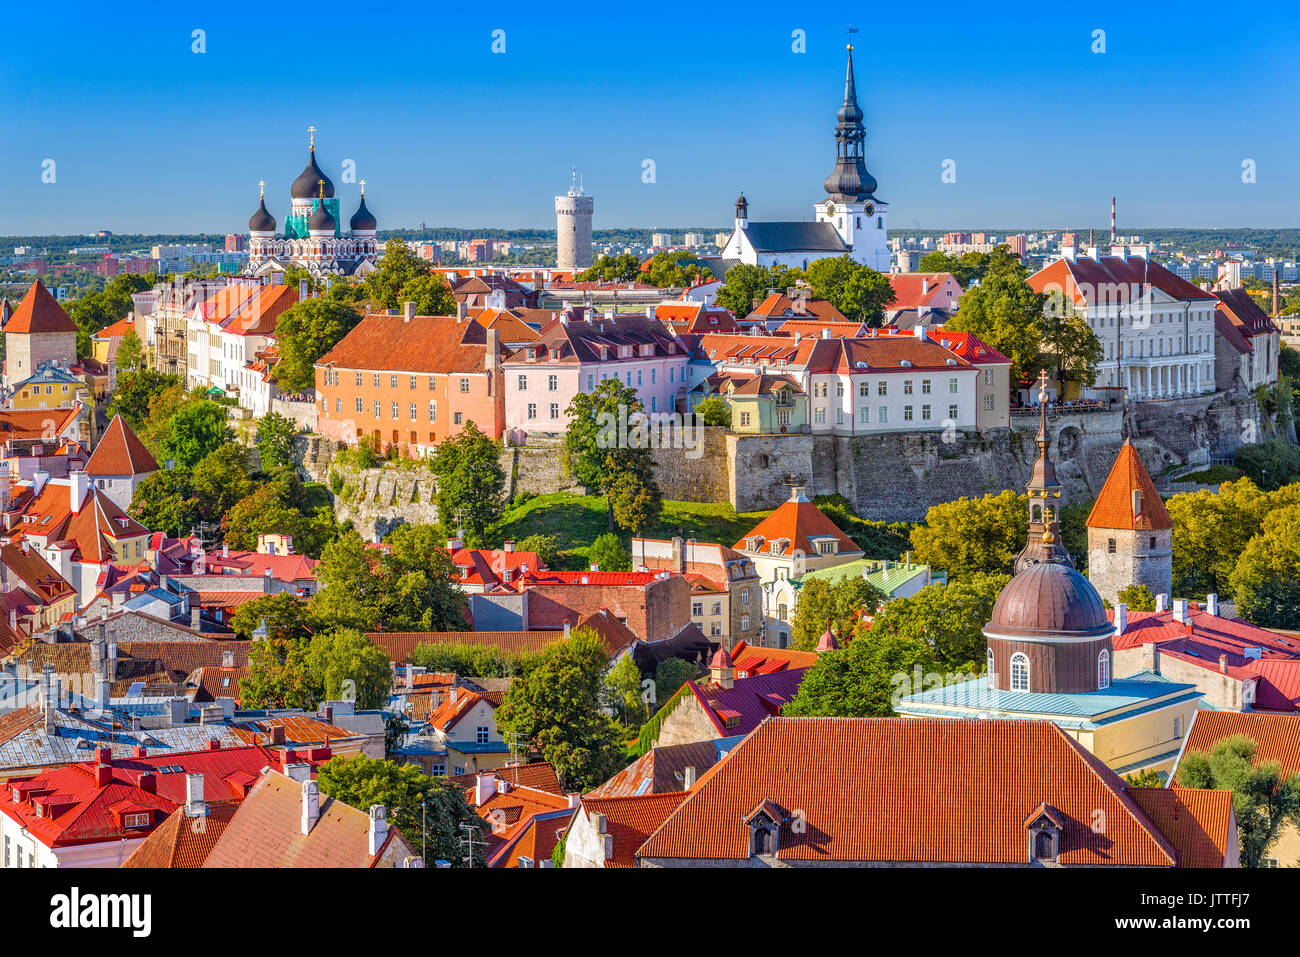 Tallinn, Estonia old city skyline. Stock Photo